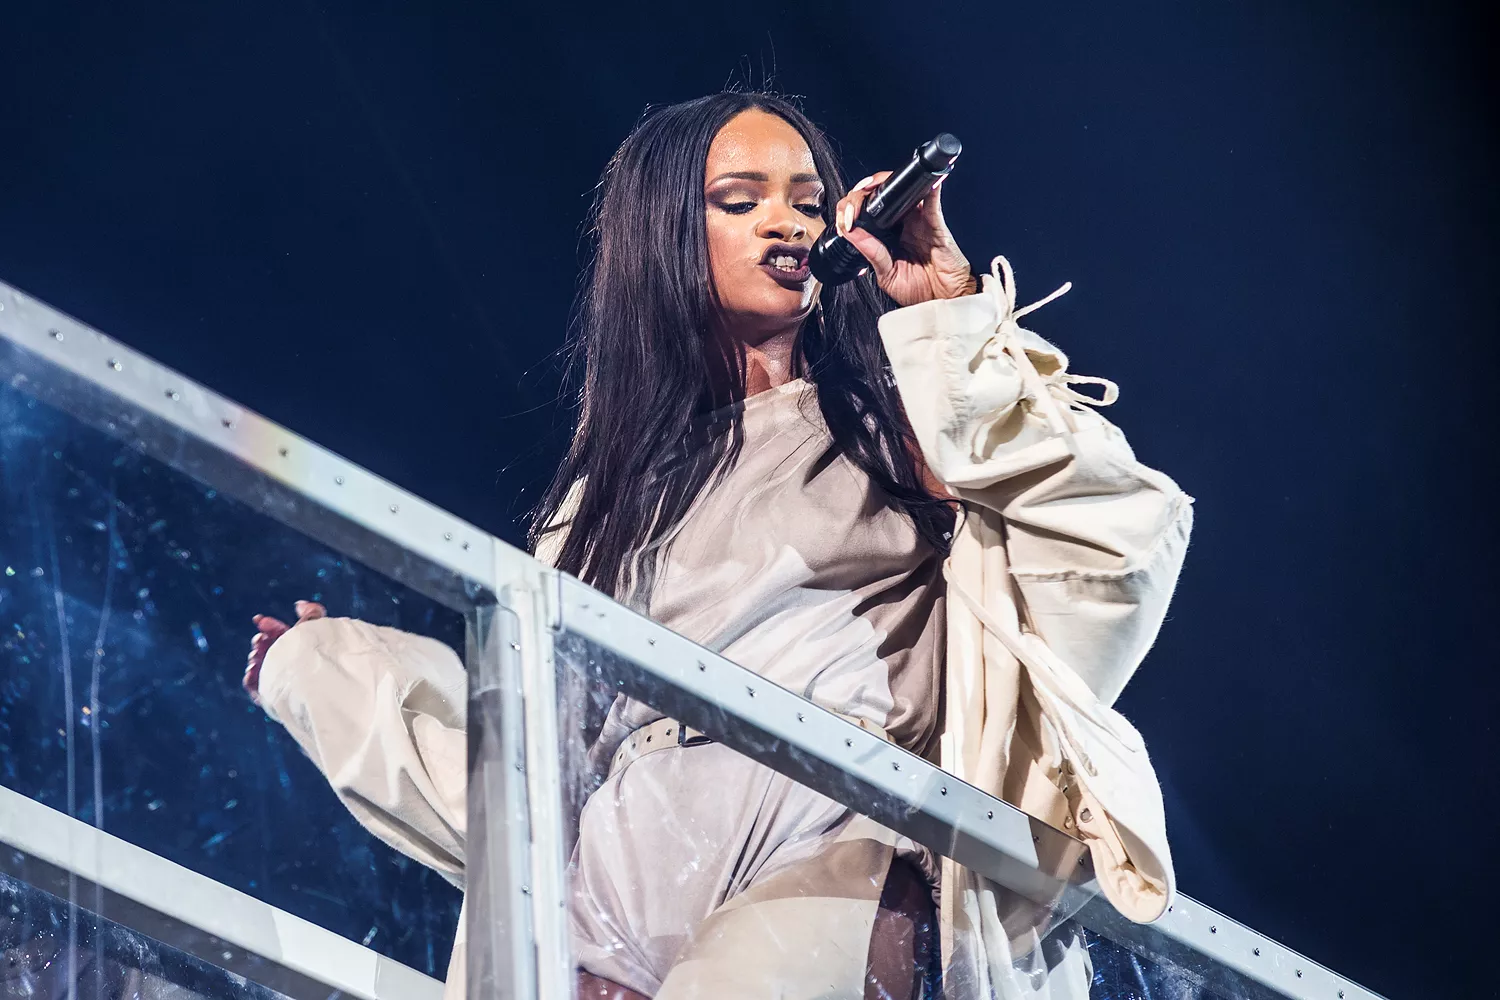 Eksklusivt Rihanna-interview: Jeg har stadig ikke nået toppen